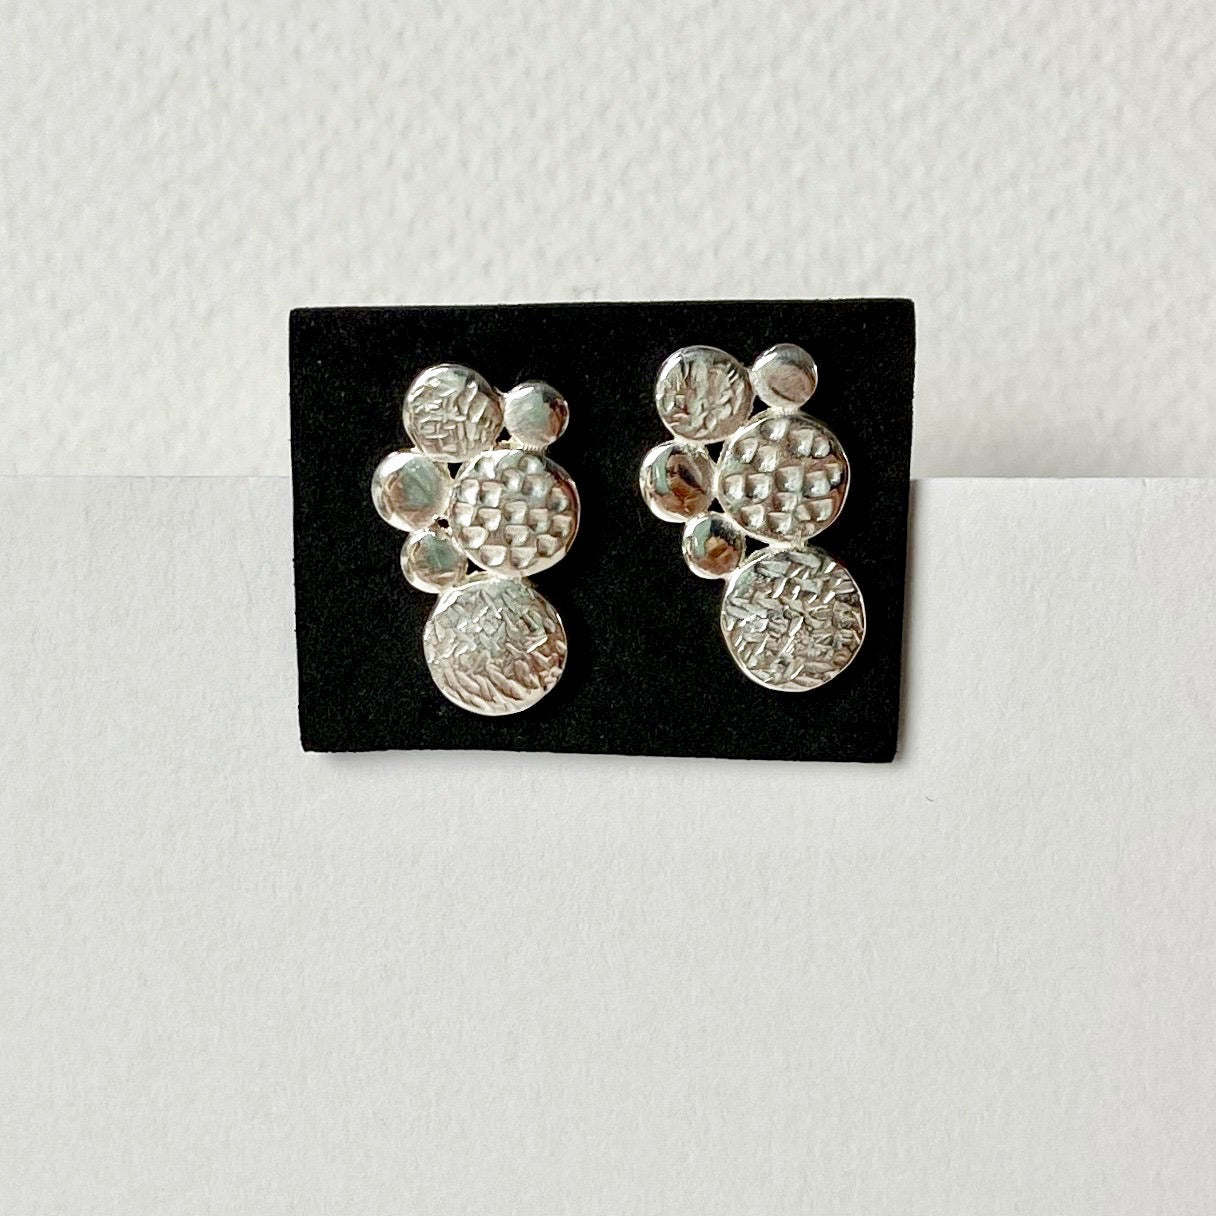 Silver Dot Double Earrings - The Nancy Smillie Shop - Art, Jewellery & Designer Gifts Glasgow